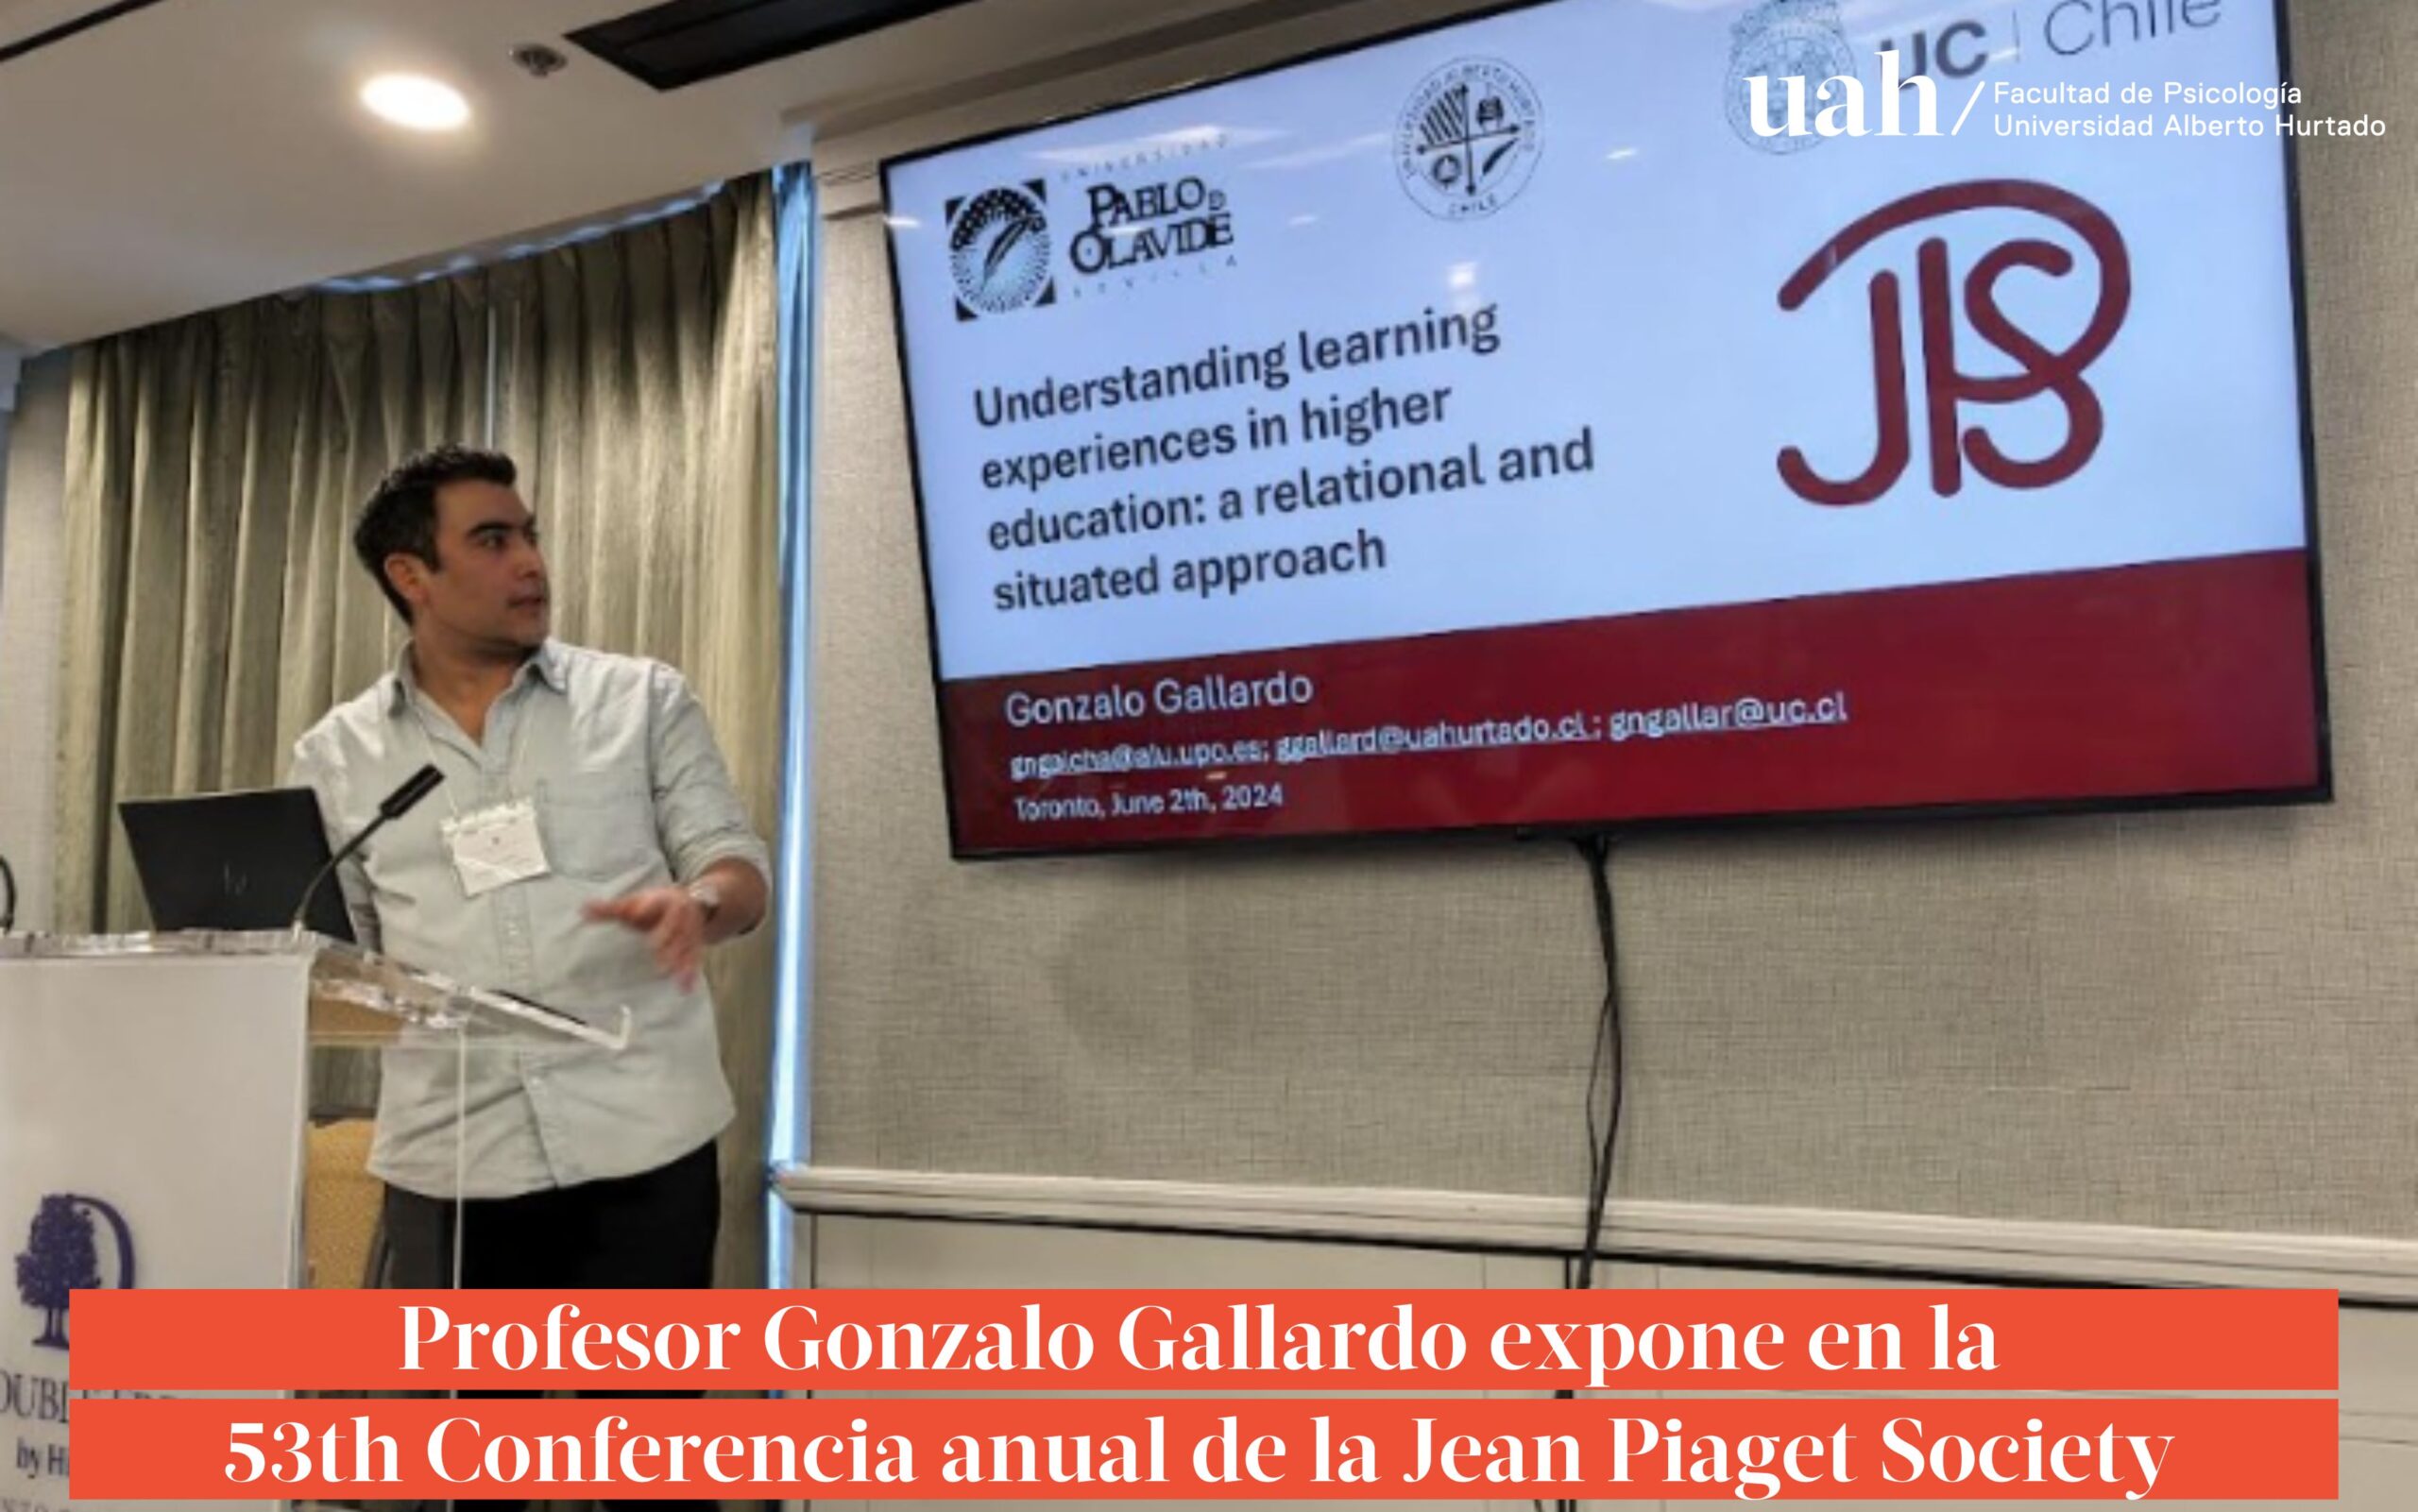 Profesor Gonzalo Gallardo expone en la 53th Conferencia anual de la Jean Piaget Society